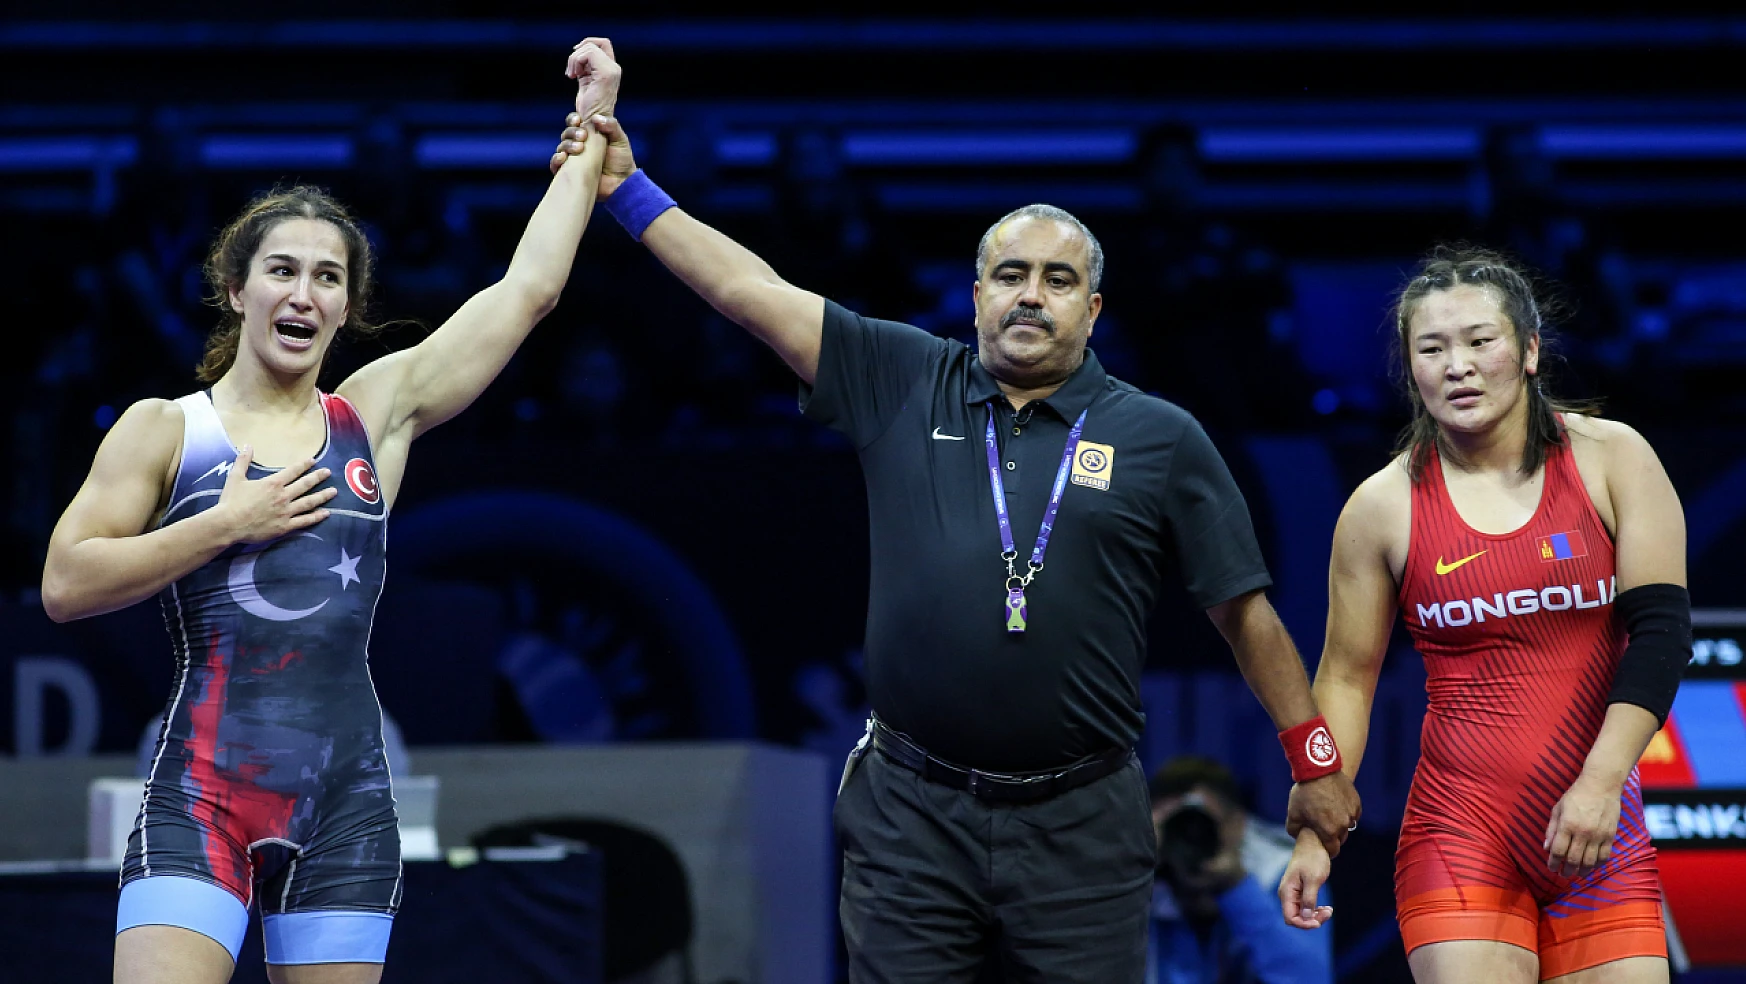 Milli güreşçi Buse Tosun Çavuşoğlu dünya şampiyonu oldu